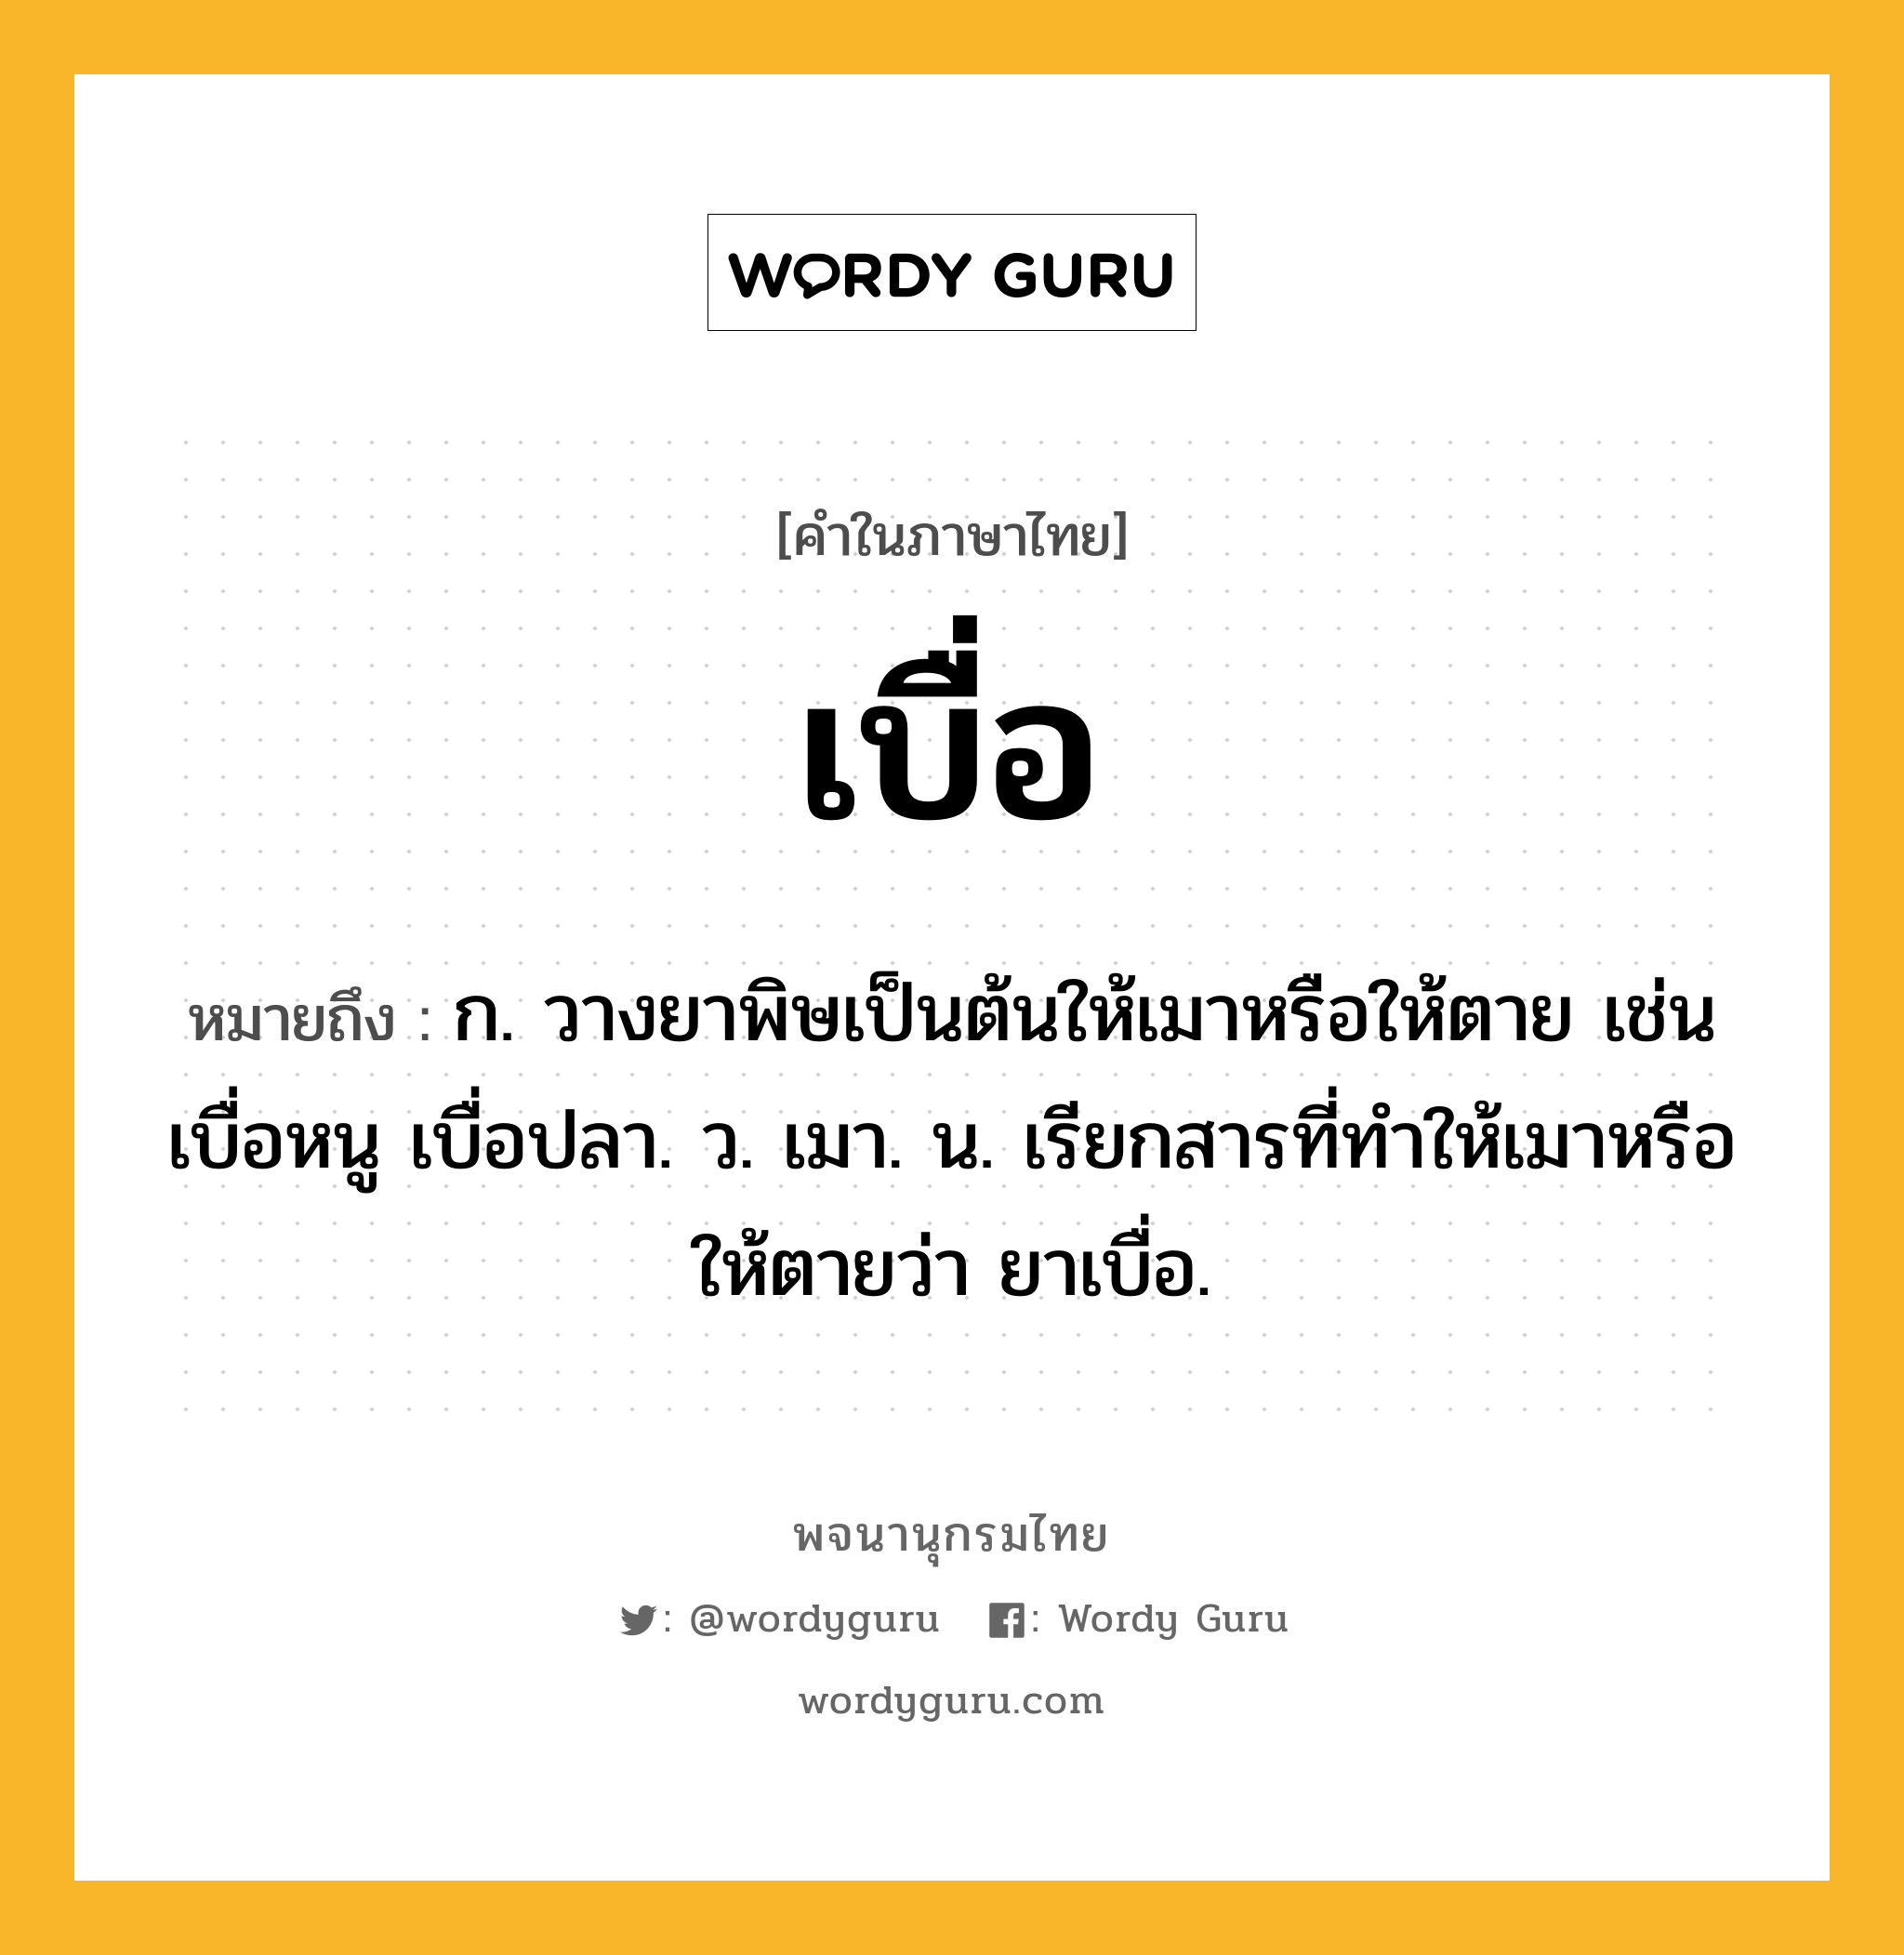 เบื่อ ความหมาย หมายถึงอะไร?, คำในภาษาไทย เบื่อ หมายถึง ก. วางยาพิษเป็นต้นให้เมาหรือให้ตาย เช่น เบื่อหนู เบื่อปลา. ว. เมา. น. เรียกสารที่ทําให้เมาหรือให้ตายว่า ยาเบื่อ.